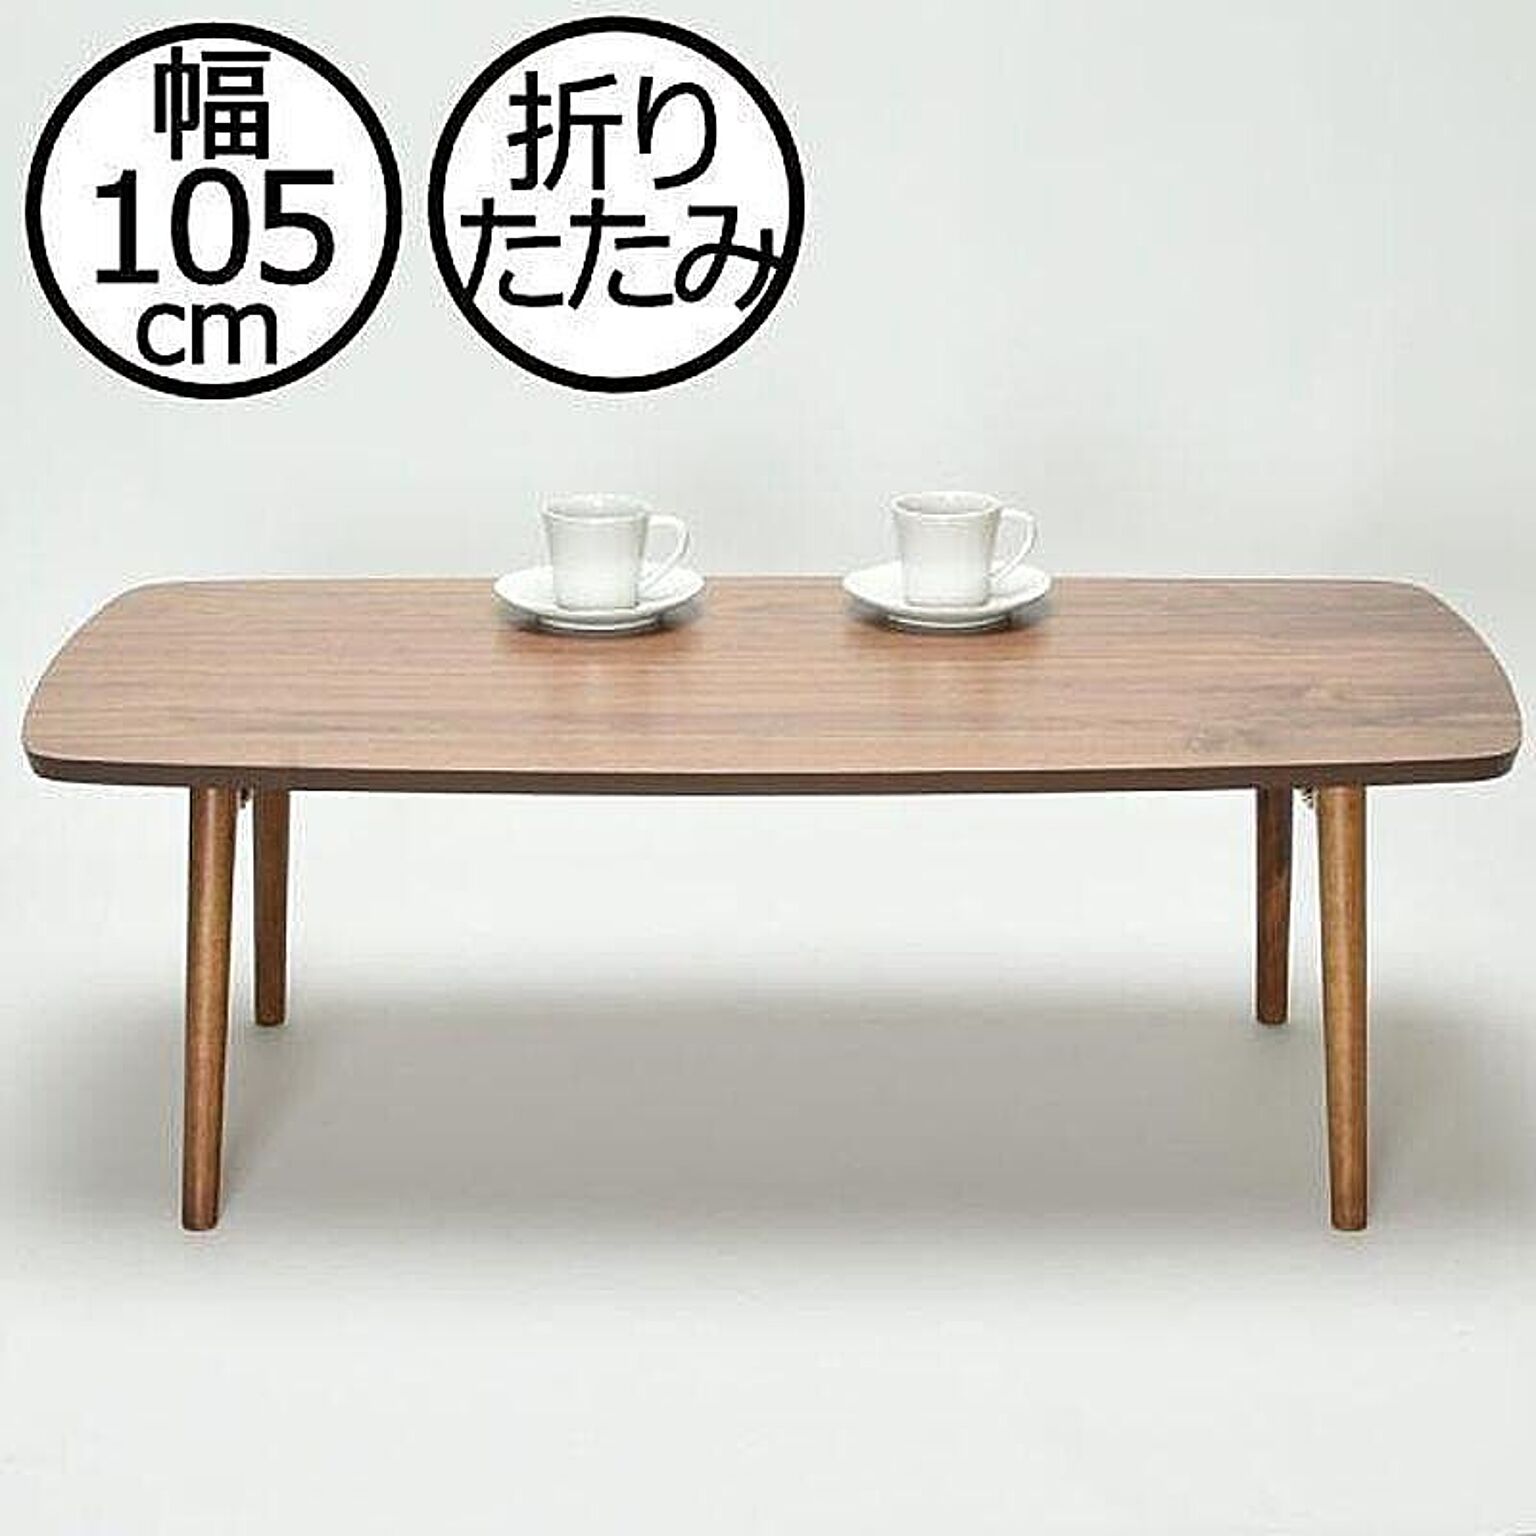 木製ローテーブル 105